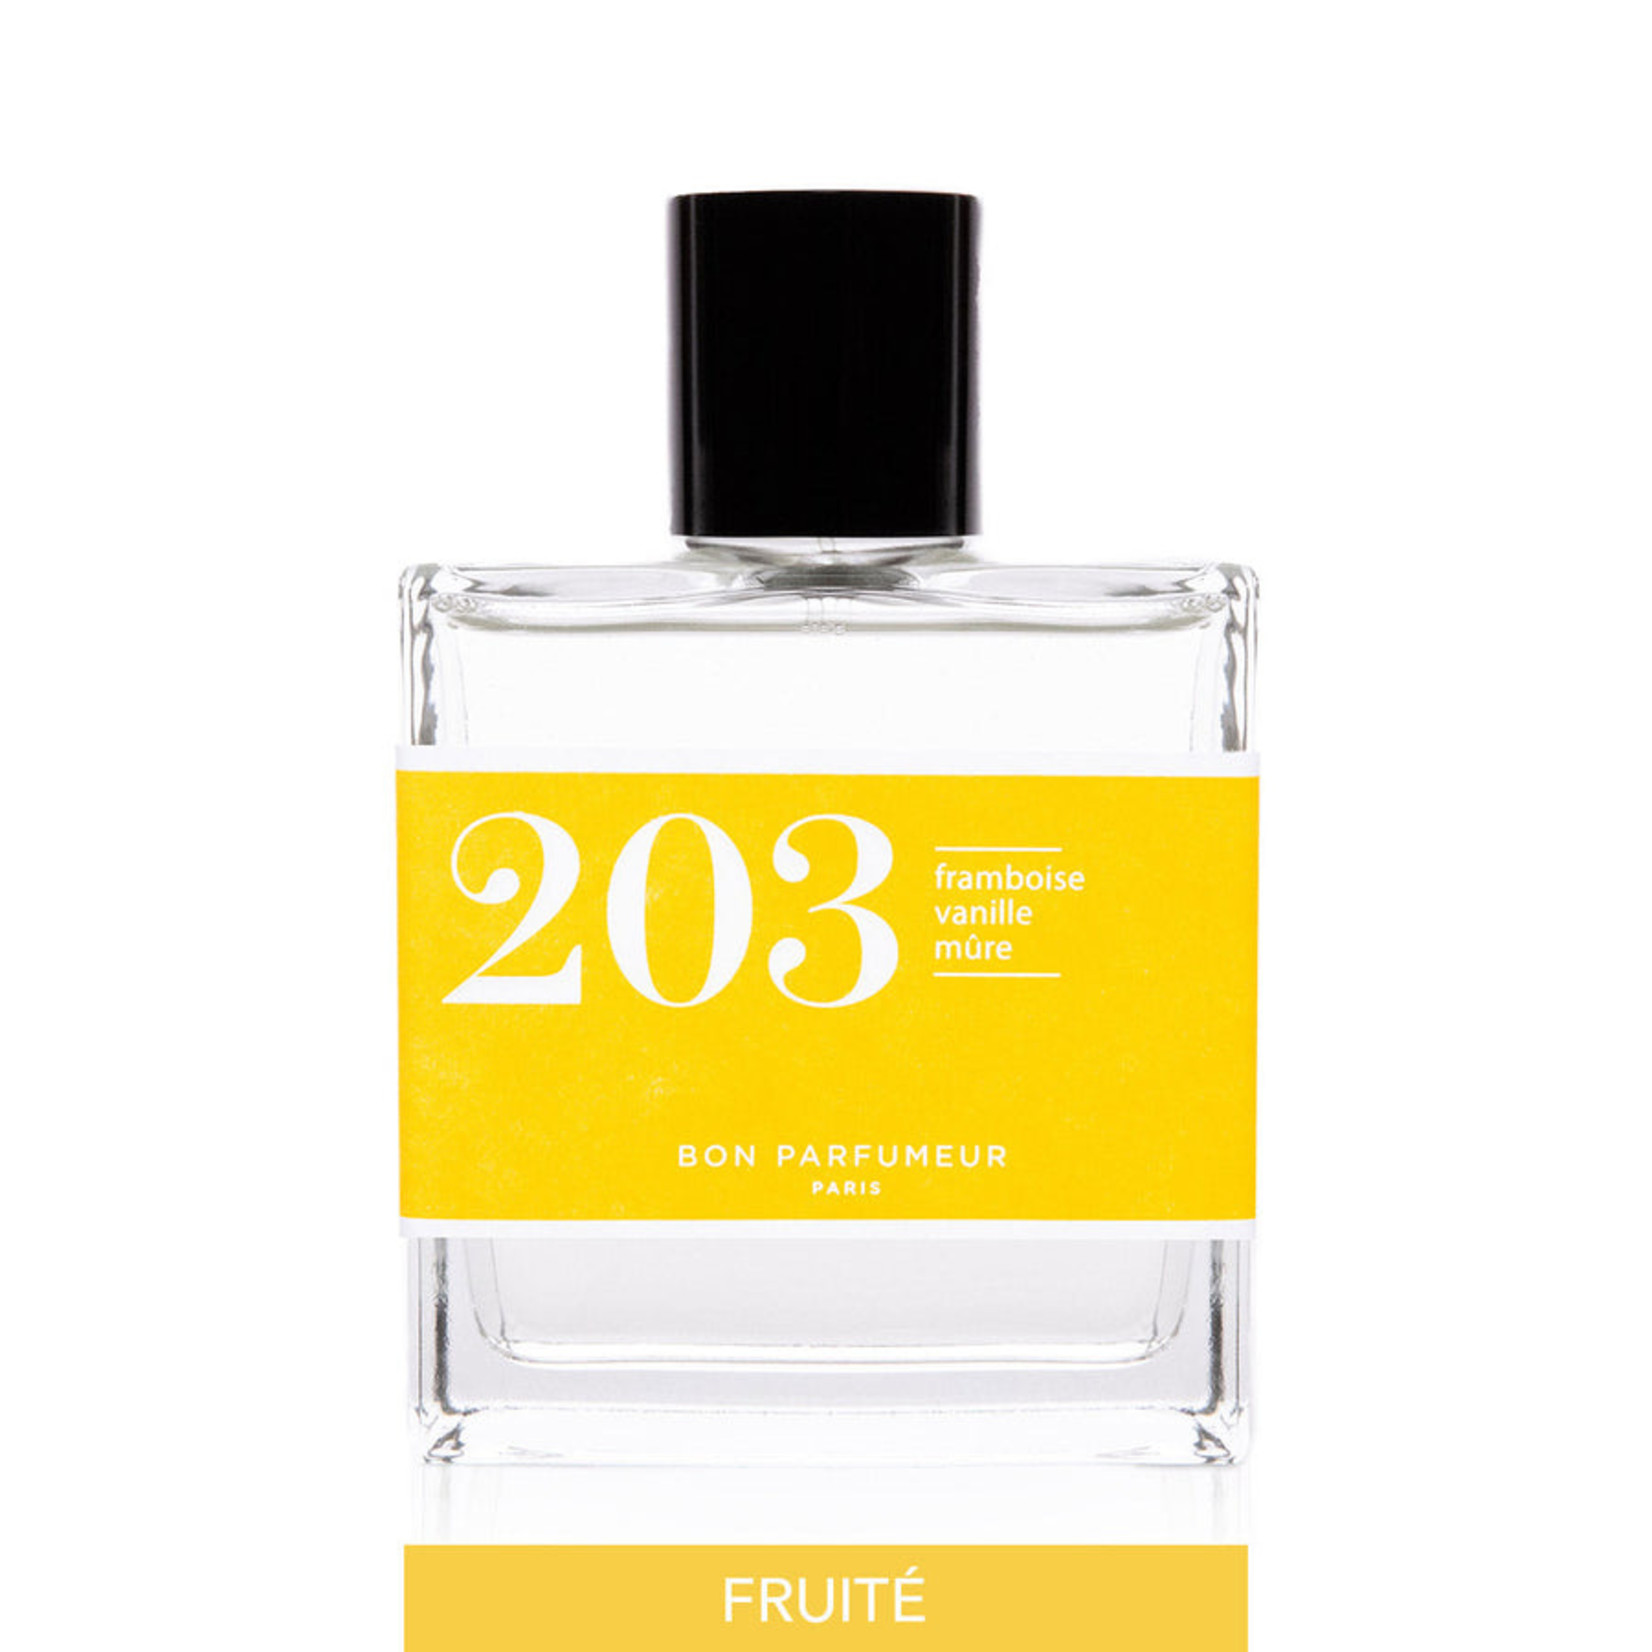 Bon Perfumeur Bon Parfumeur | 203